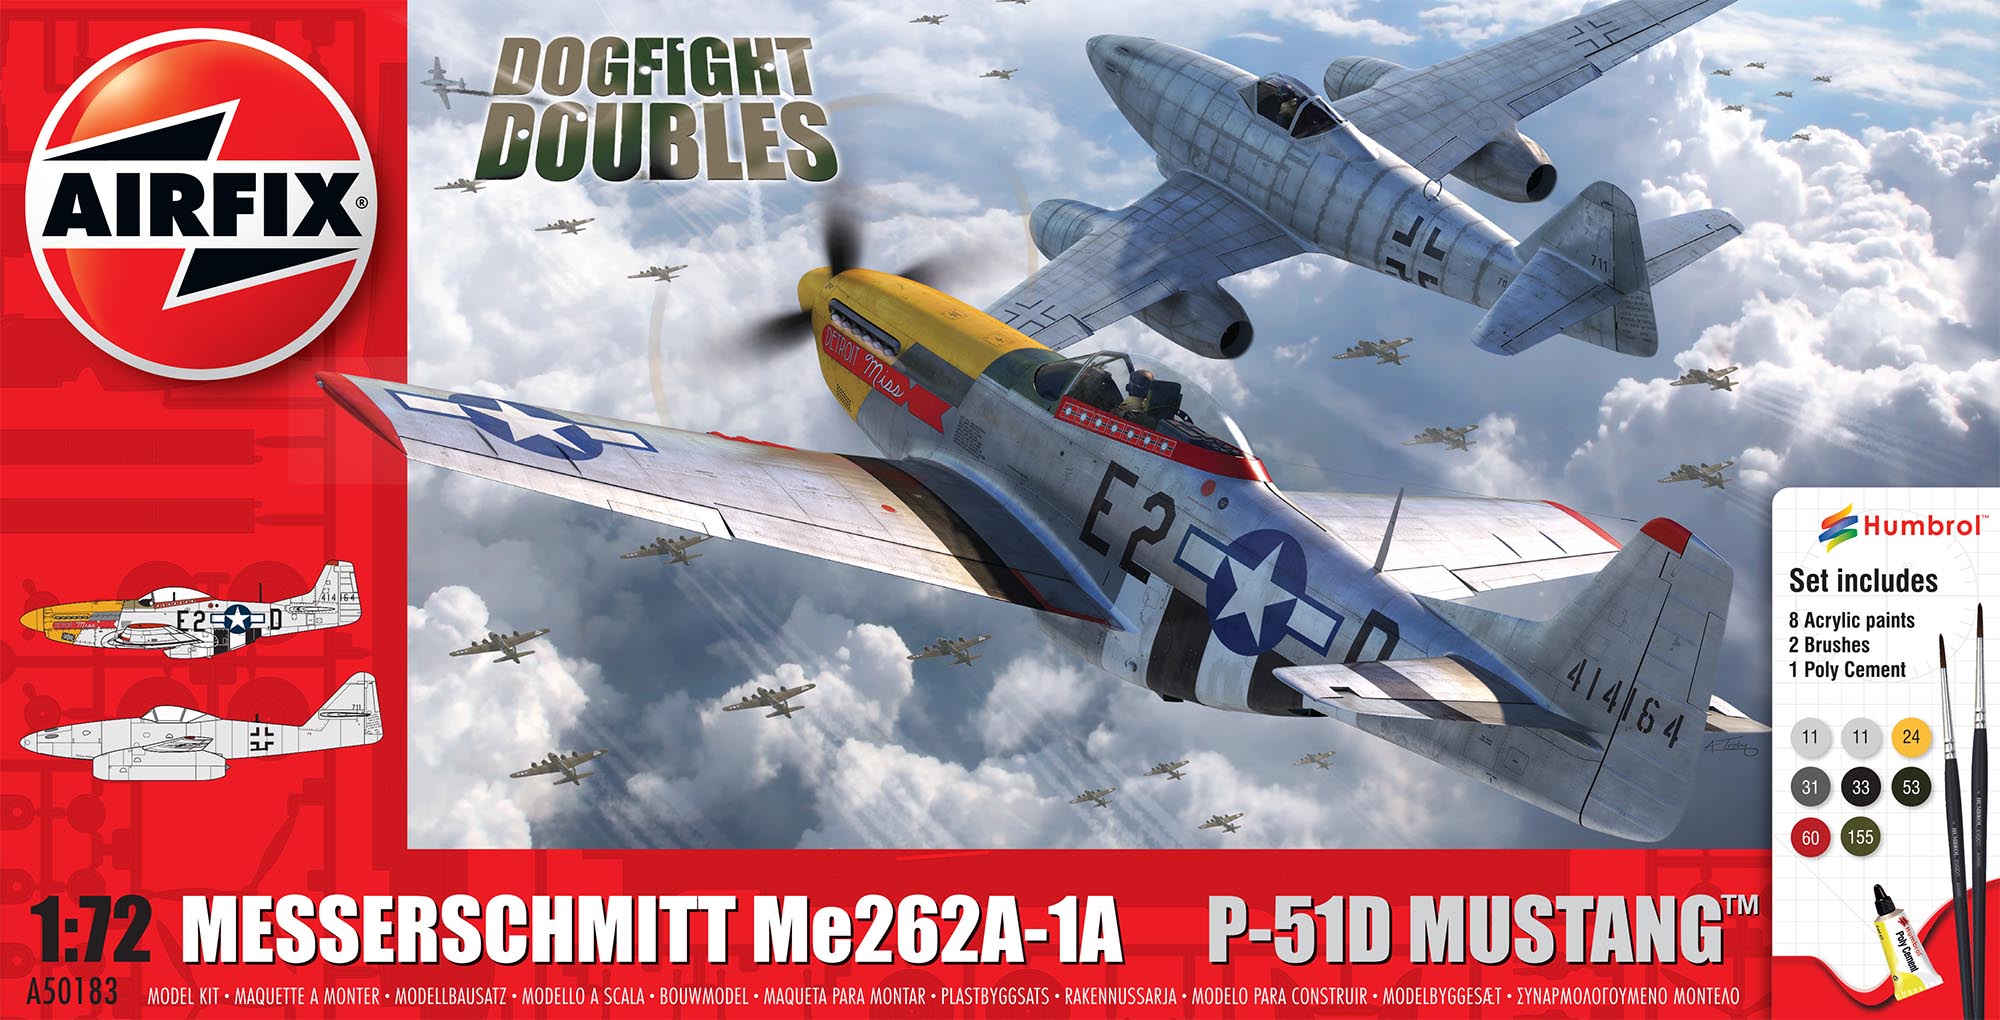 Gift Set A50183 - Messerschmitt Me262 P-51D Mustang Dogfight Double (1:72)